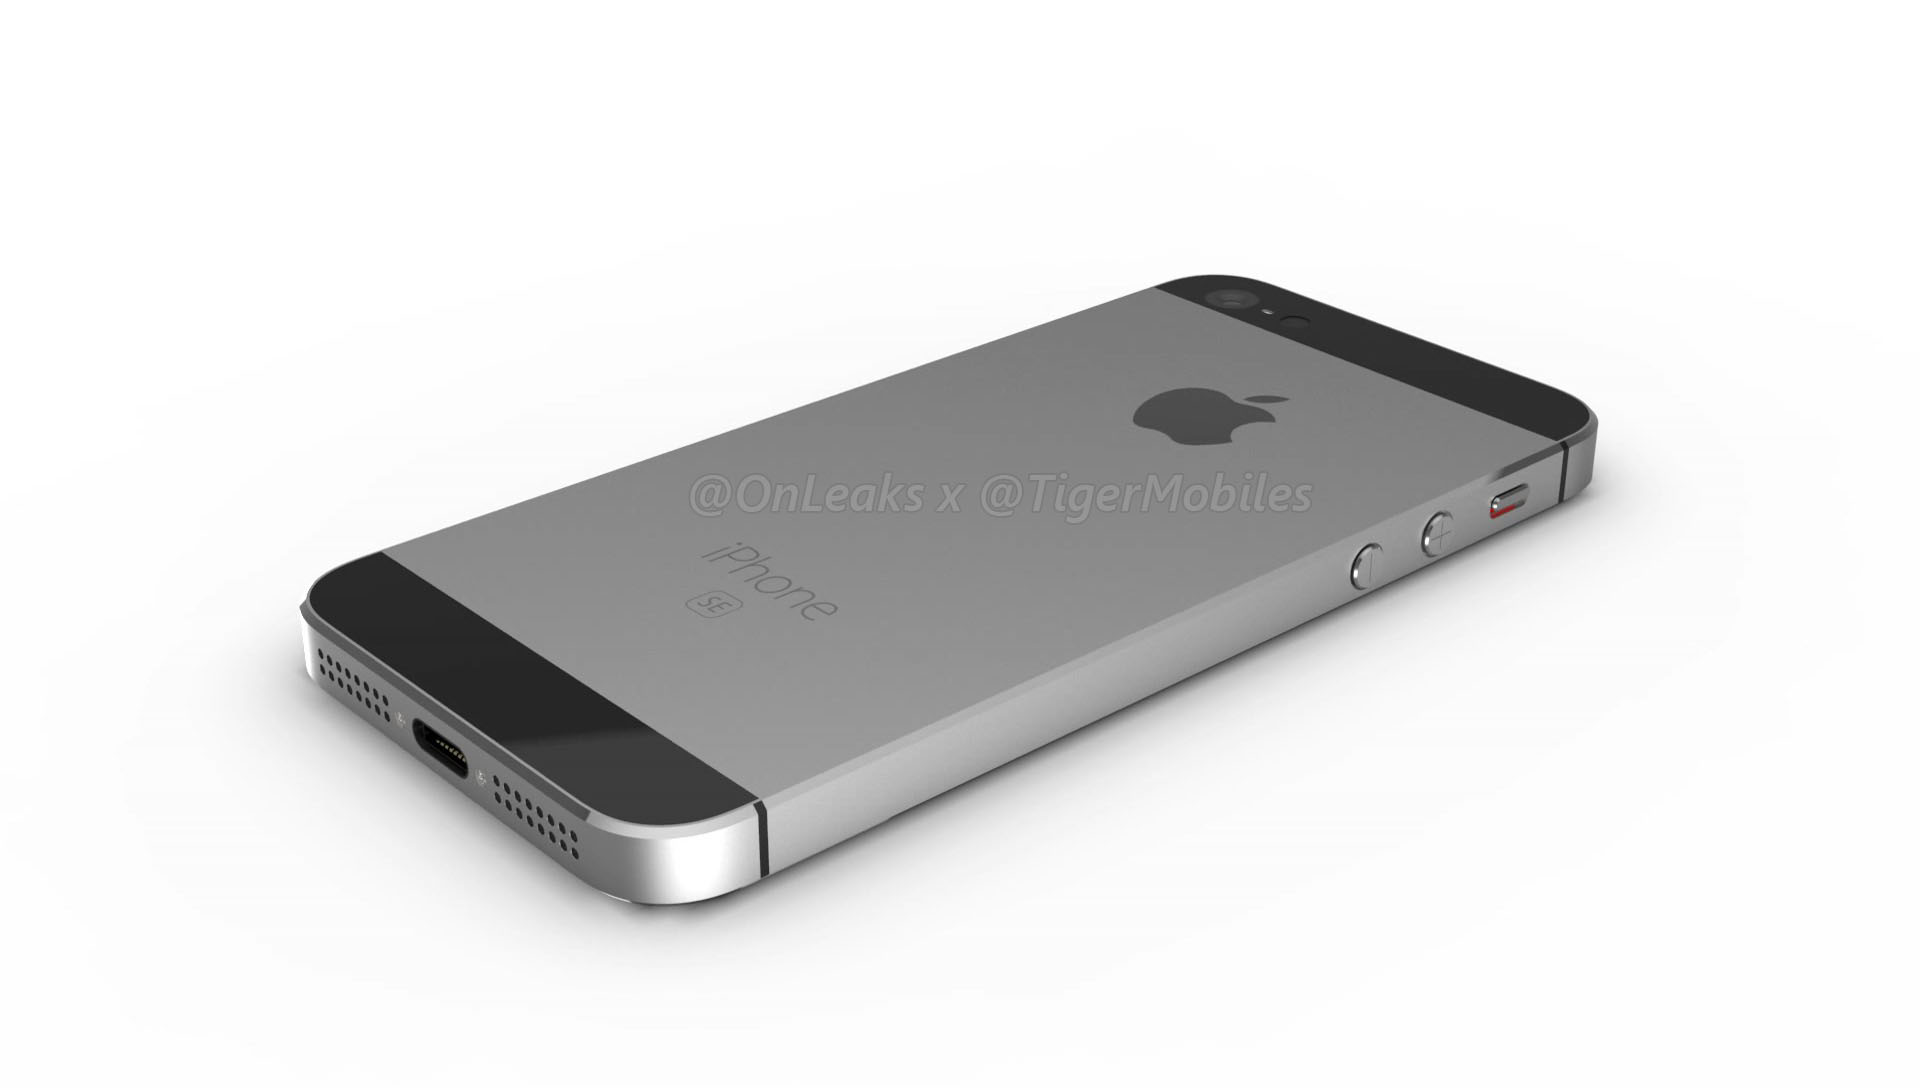 Hé lộ toàn bộ thiết kế truyền thống tuyệt đẹp
của iPhone SE 2 qua bộ ảnh render mới rò rỉ